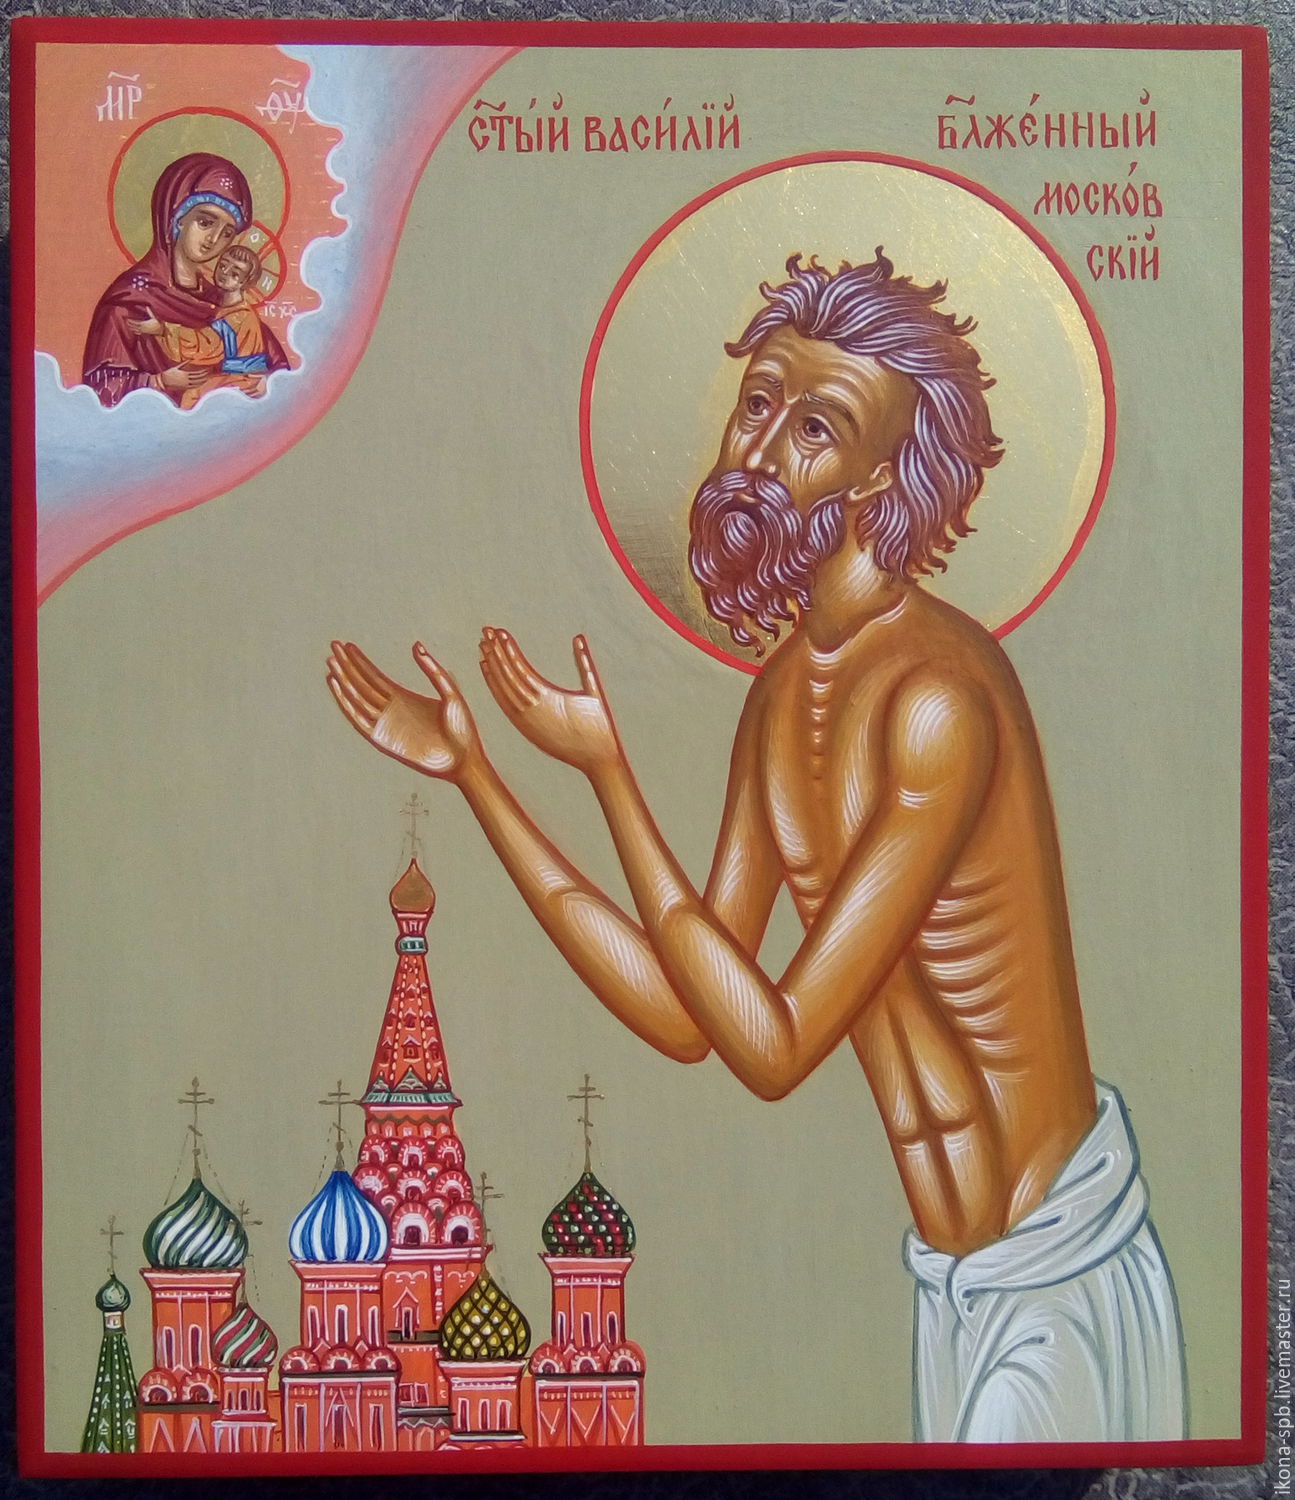 Icono de San Basilio, el santo de Moscú, Rusia. 